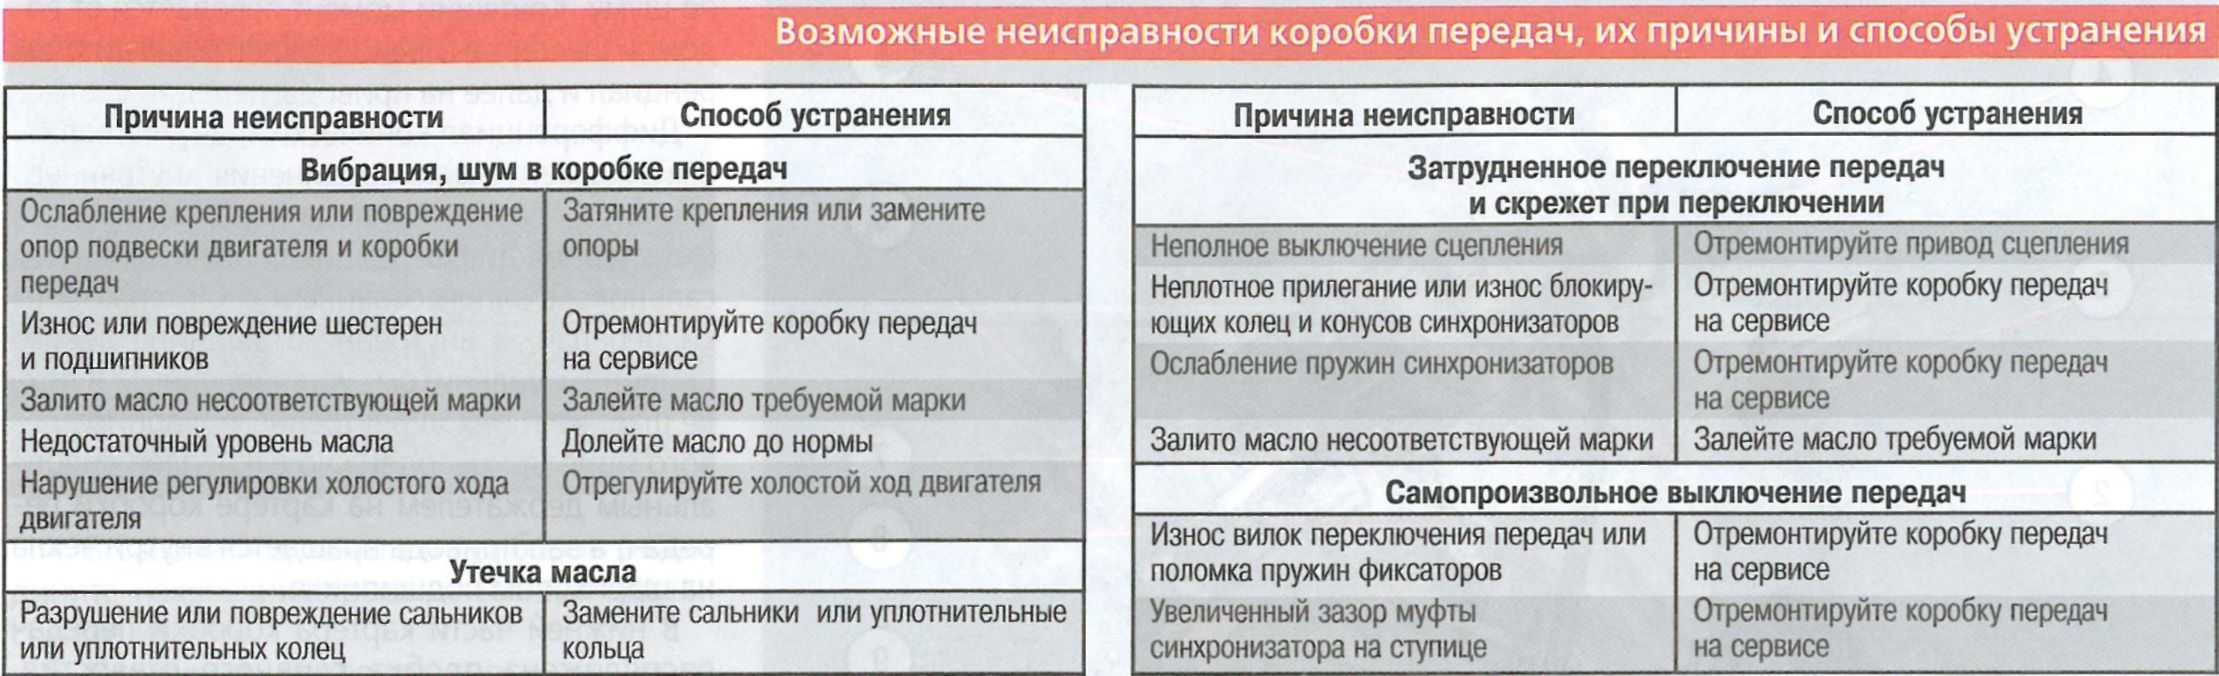 Ремонт раздаточной коробки шевроле тахо в москве: адреса и телефоны автосервисов, рейтинги и отзывы, вопрос-ответ